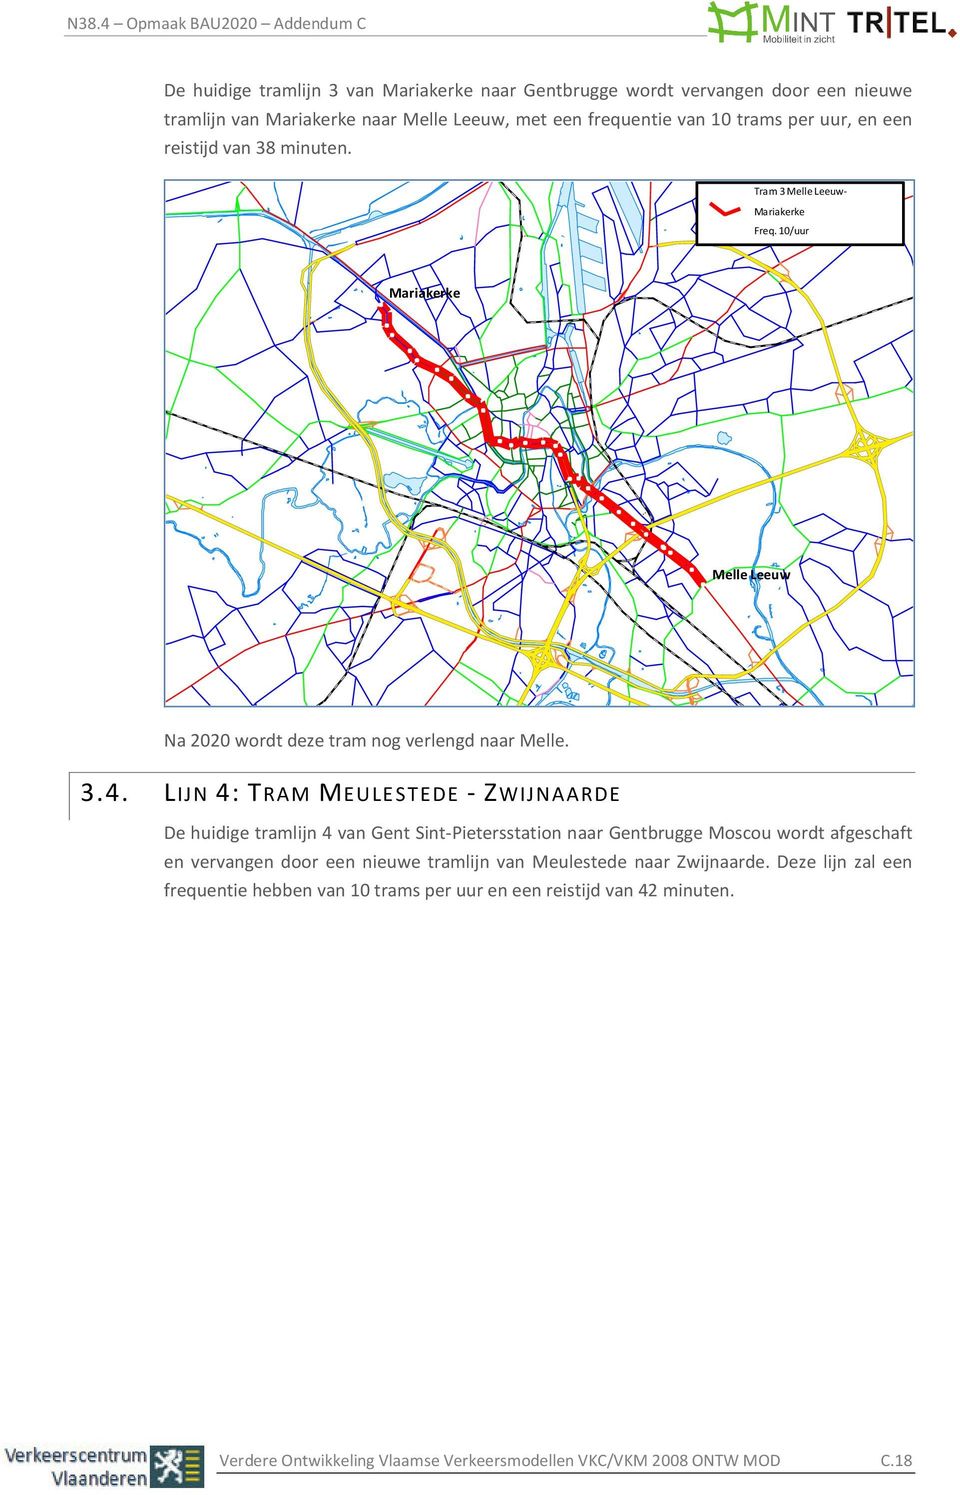 LIJN 4: TRAM MEULESTEDE - ZWIJNAARDE De huidige tramlijn 4 van Gent Sint-Pietersstation naar Gentbrugge Moscou wordt afgeschaft en vervangen door een nieuwe tramlijn van